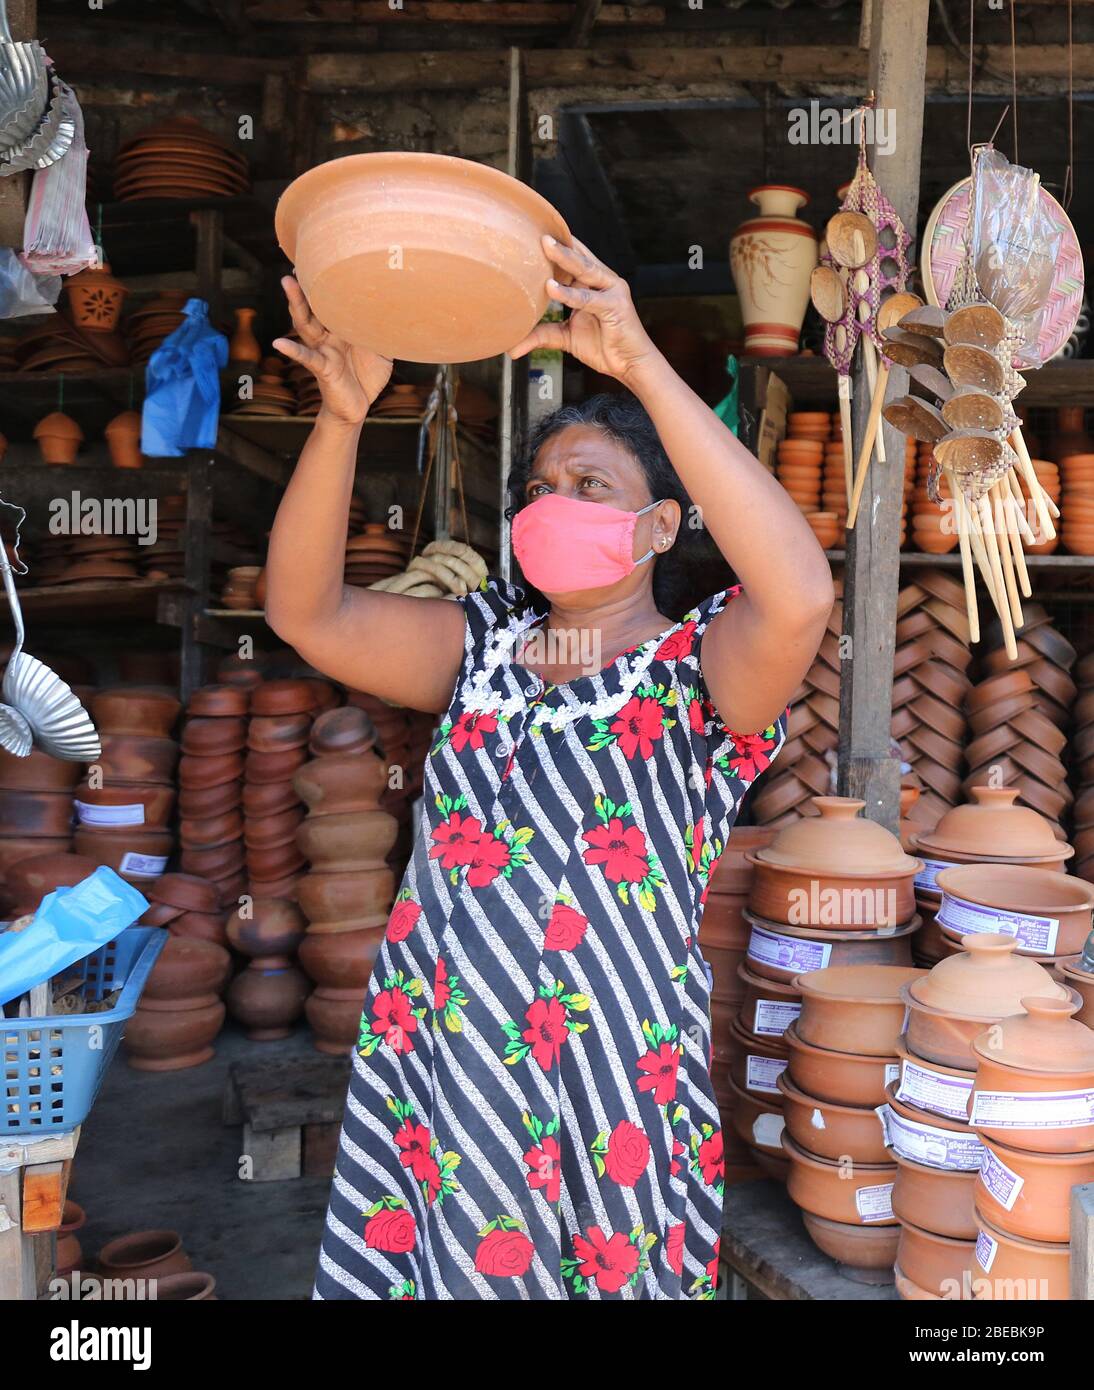 31. März 2020, Colombo, COLOMBO, Sri Lanka: Eine Frau verkauft Tontöpfe und Pfannen während der Neujahrsveranstaltung..Singhalesisch das tamilische Neujahr wird während der von der Regierung implementierten Ausgangssperre auf der ganzen Insel markiert, um die Ausbreitung des SARS-CoV-2 Coronavirus zu verlangsamen. (Bild: © Harshana Johanas/SOPA Images via ZUMA Wire) Stockfoto